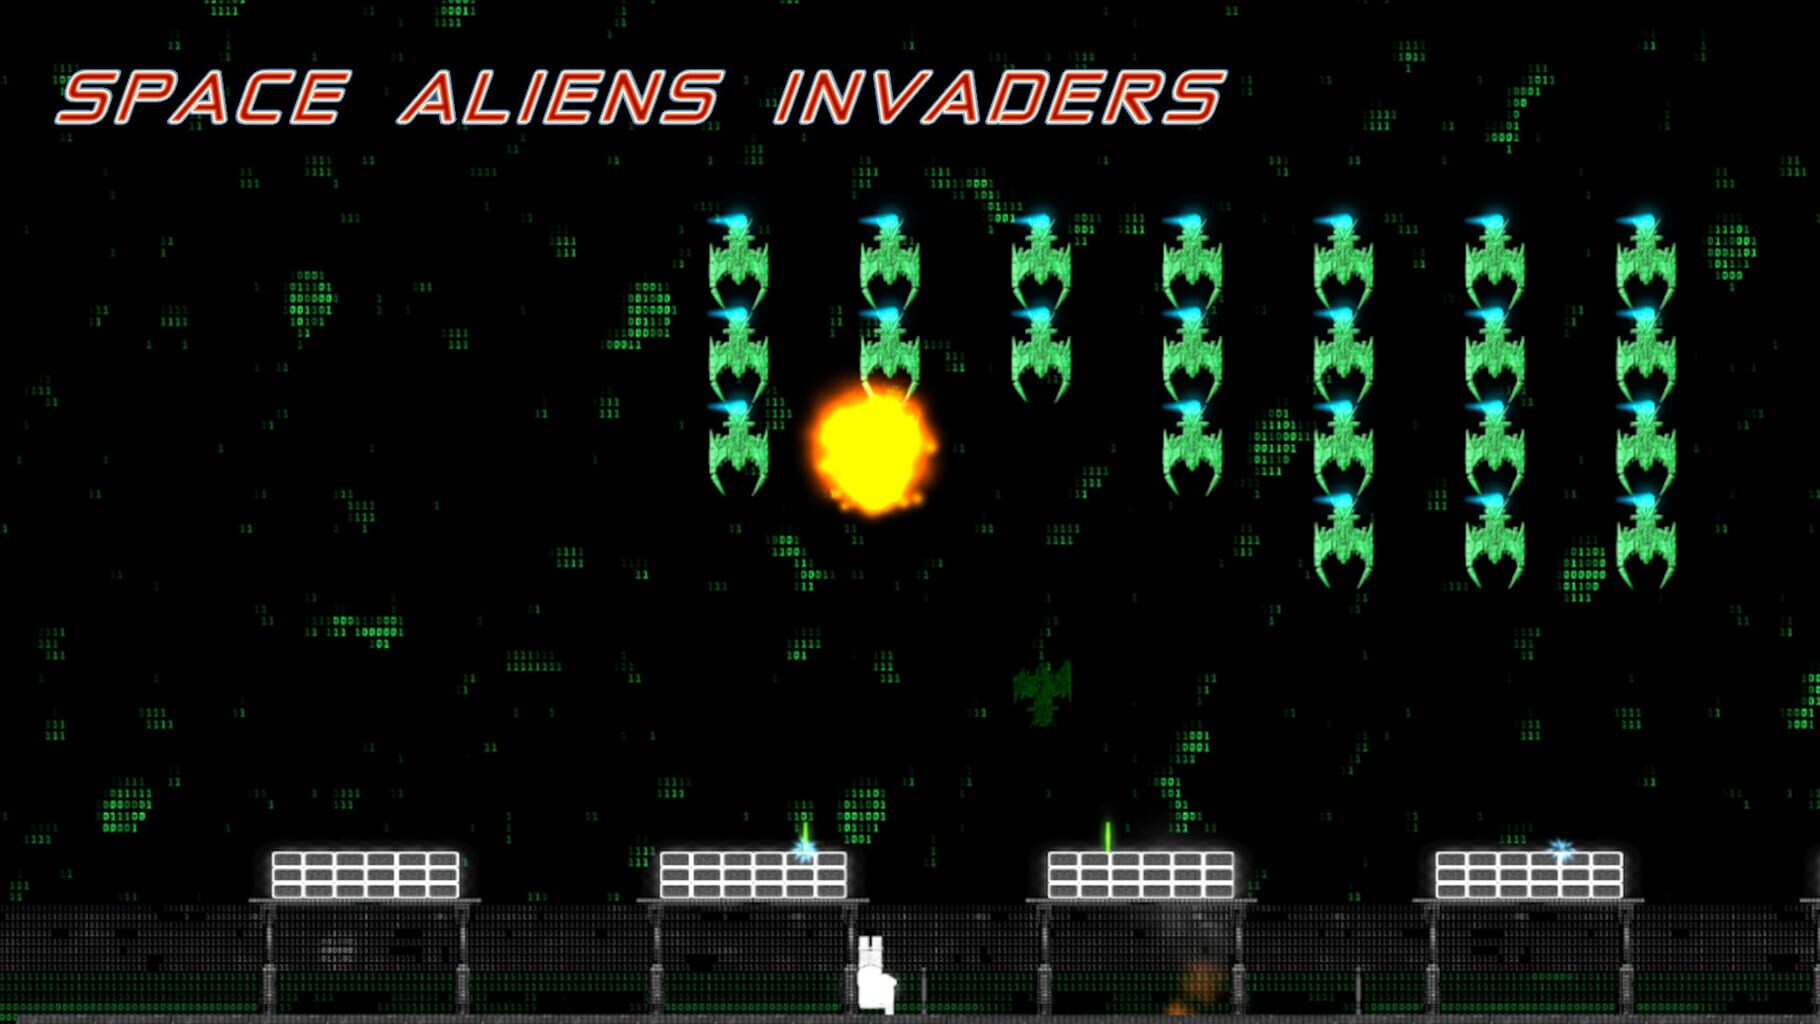 Space Aliens Invaders artwork